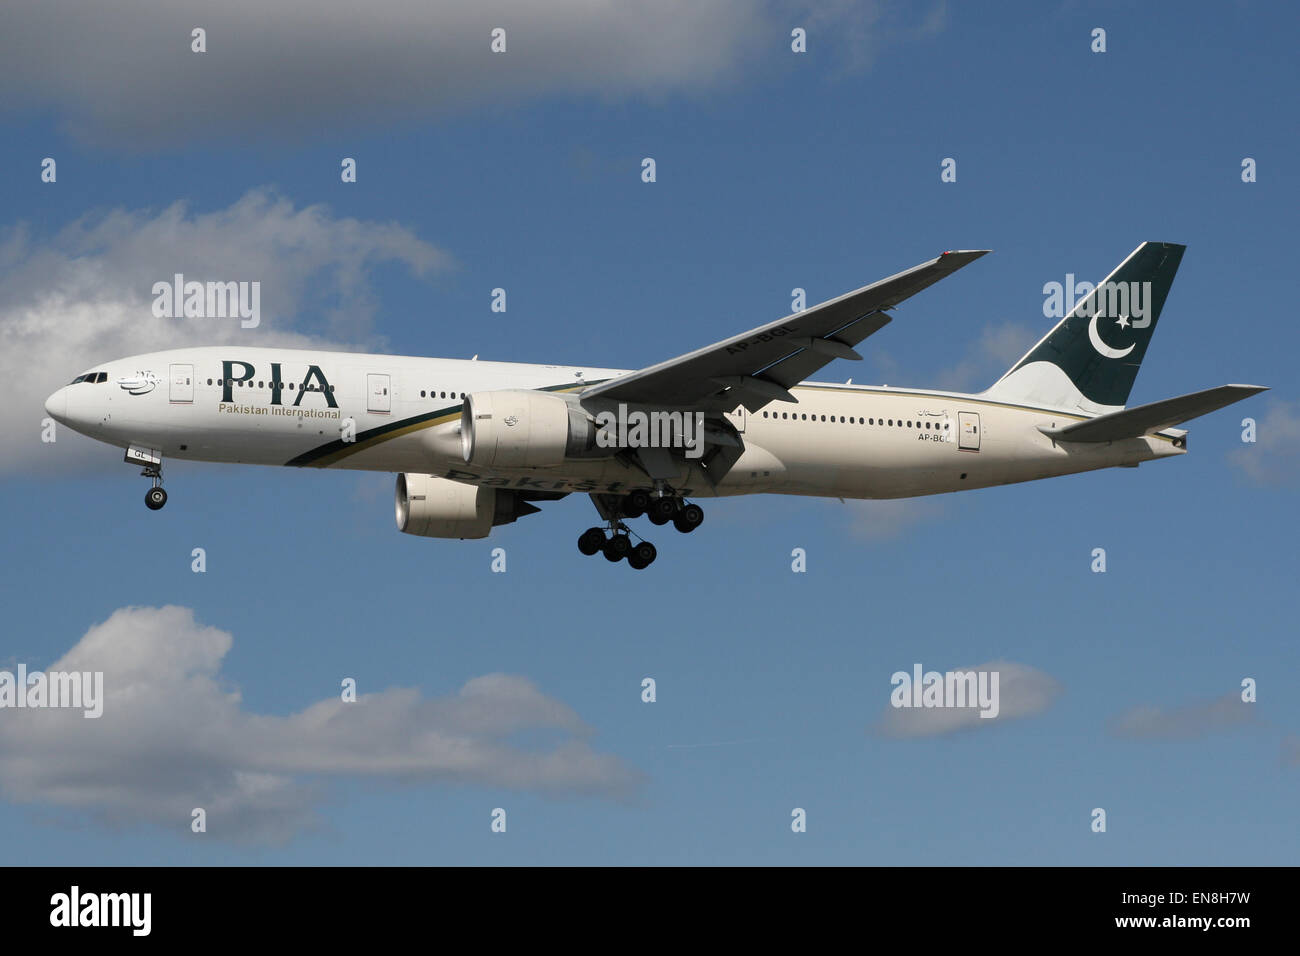 PIA PAKISTAN 777 Stock Photo